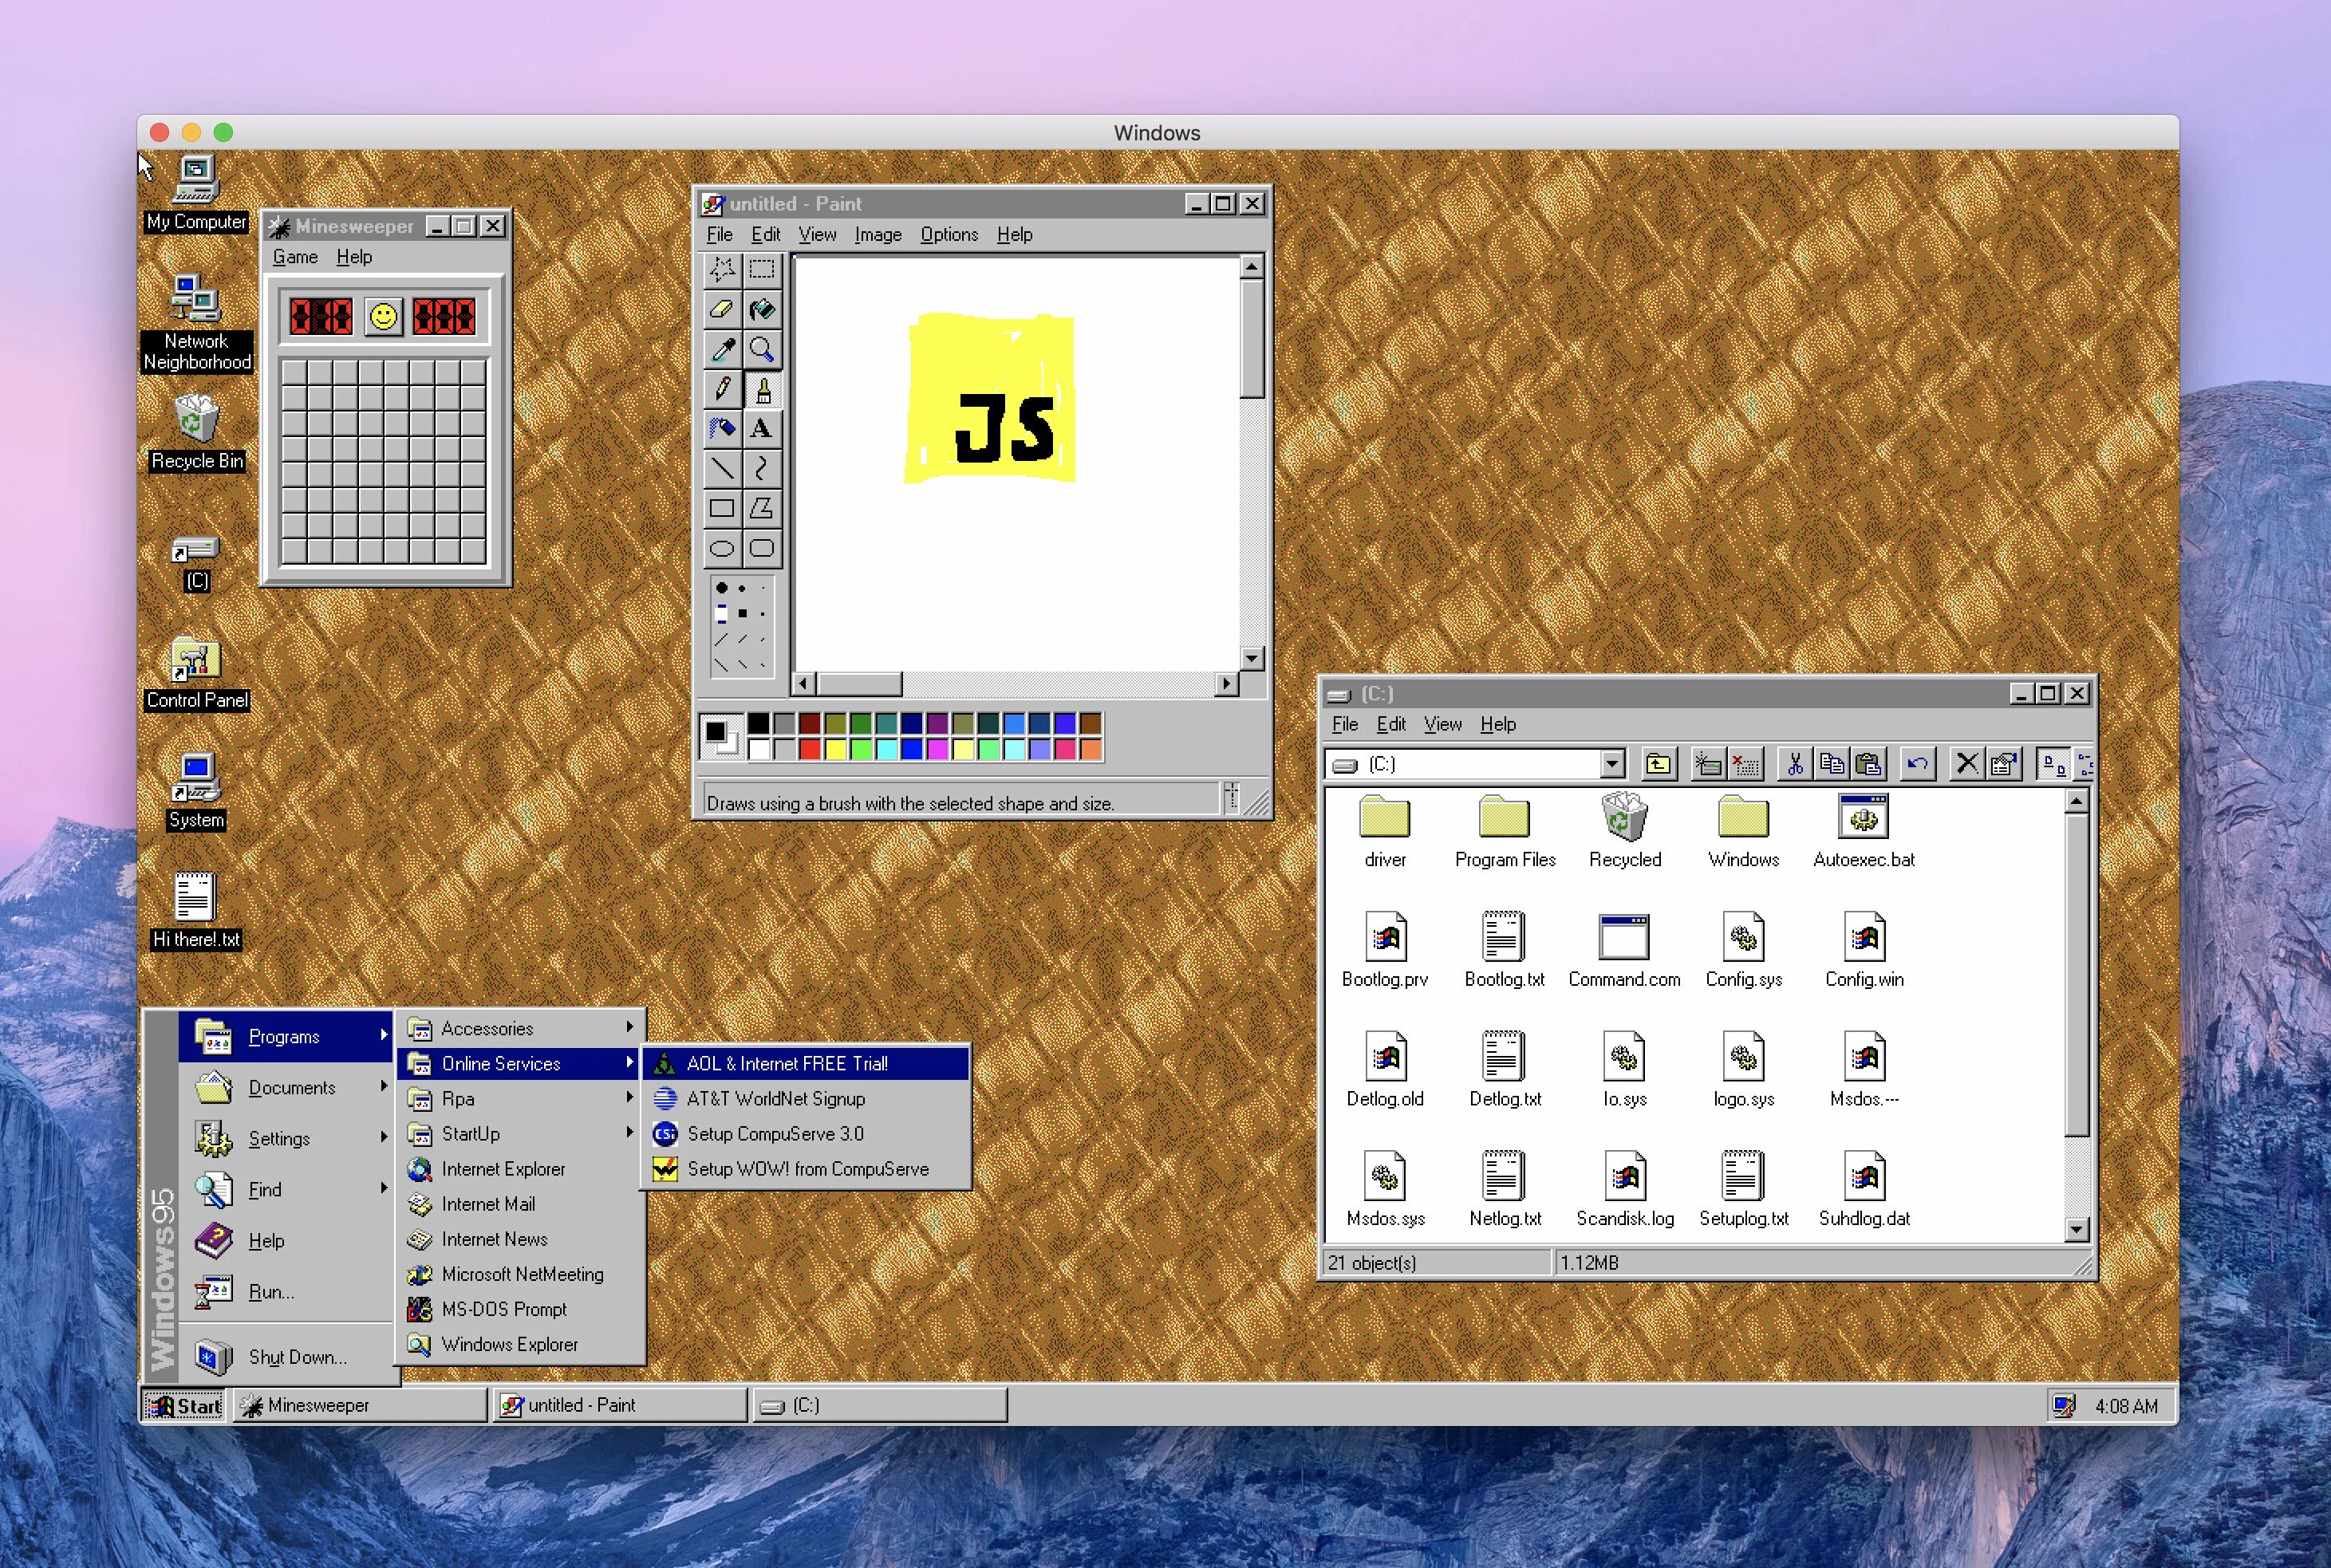 Графический Интерфейс Windows 95. Операционная система Windows 95. Изображение интерфейса ОС Windows 95. Windows 95 1995.